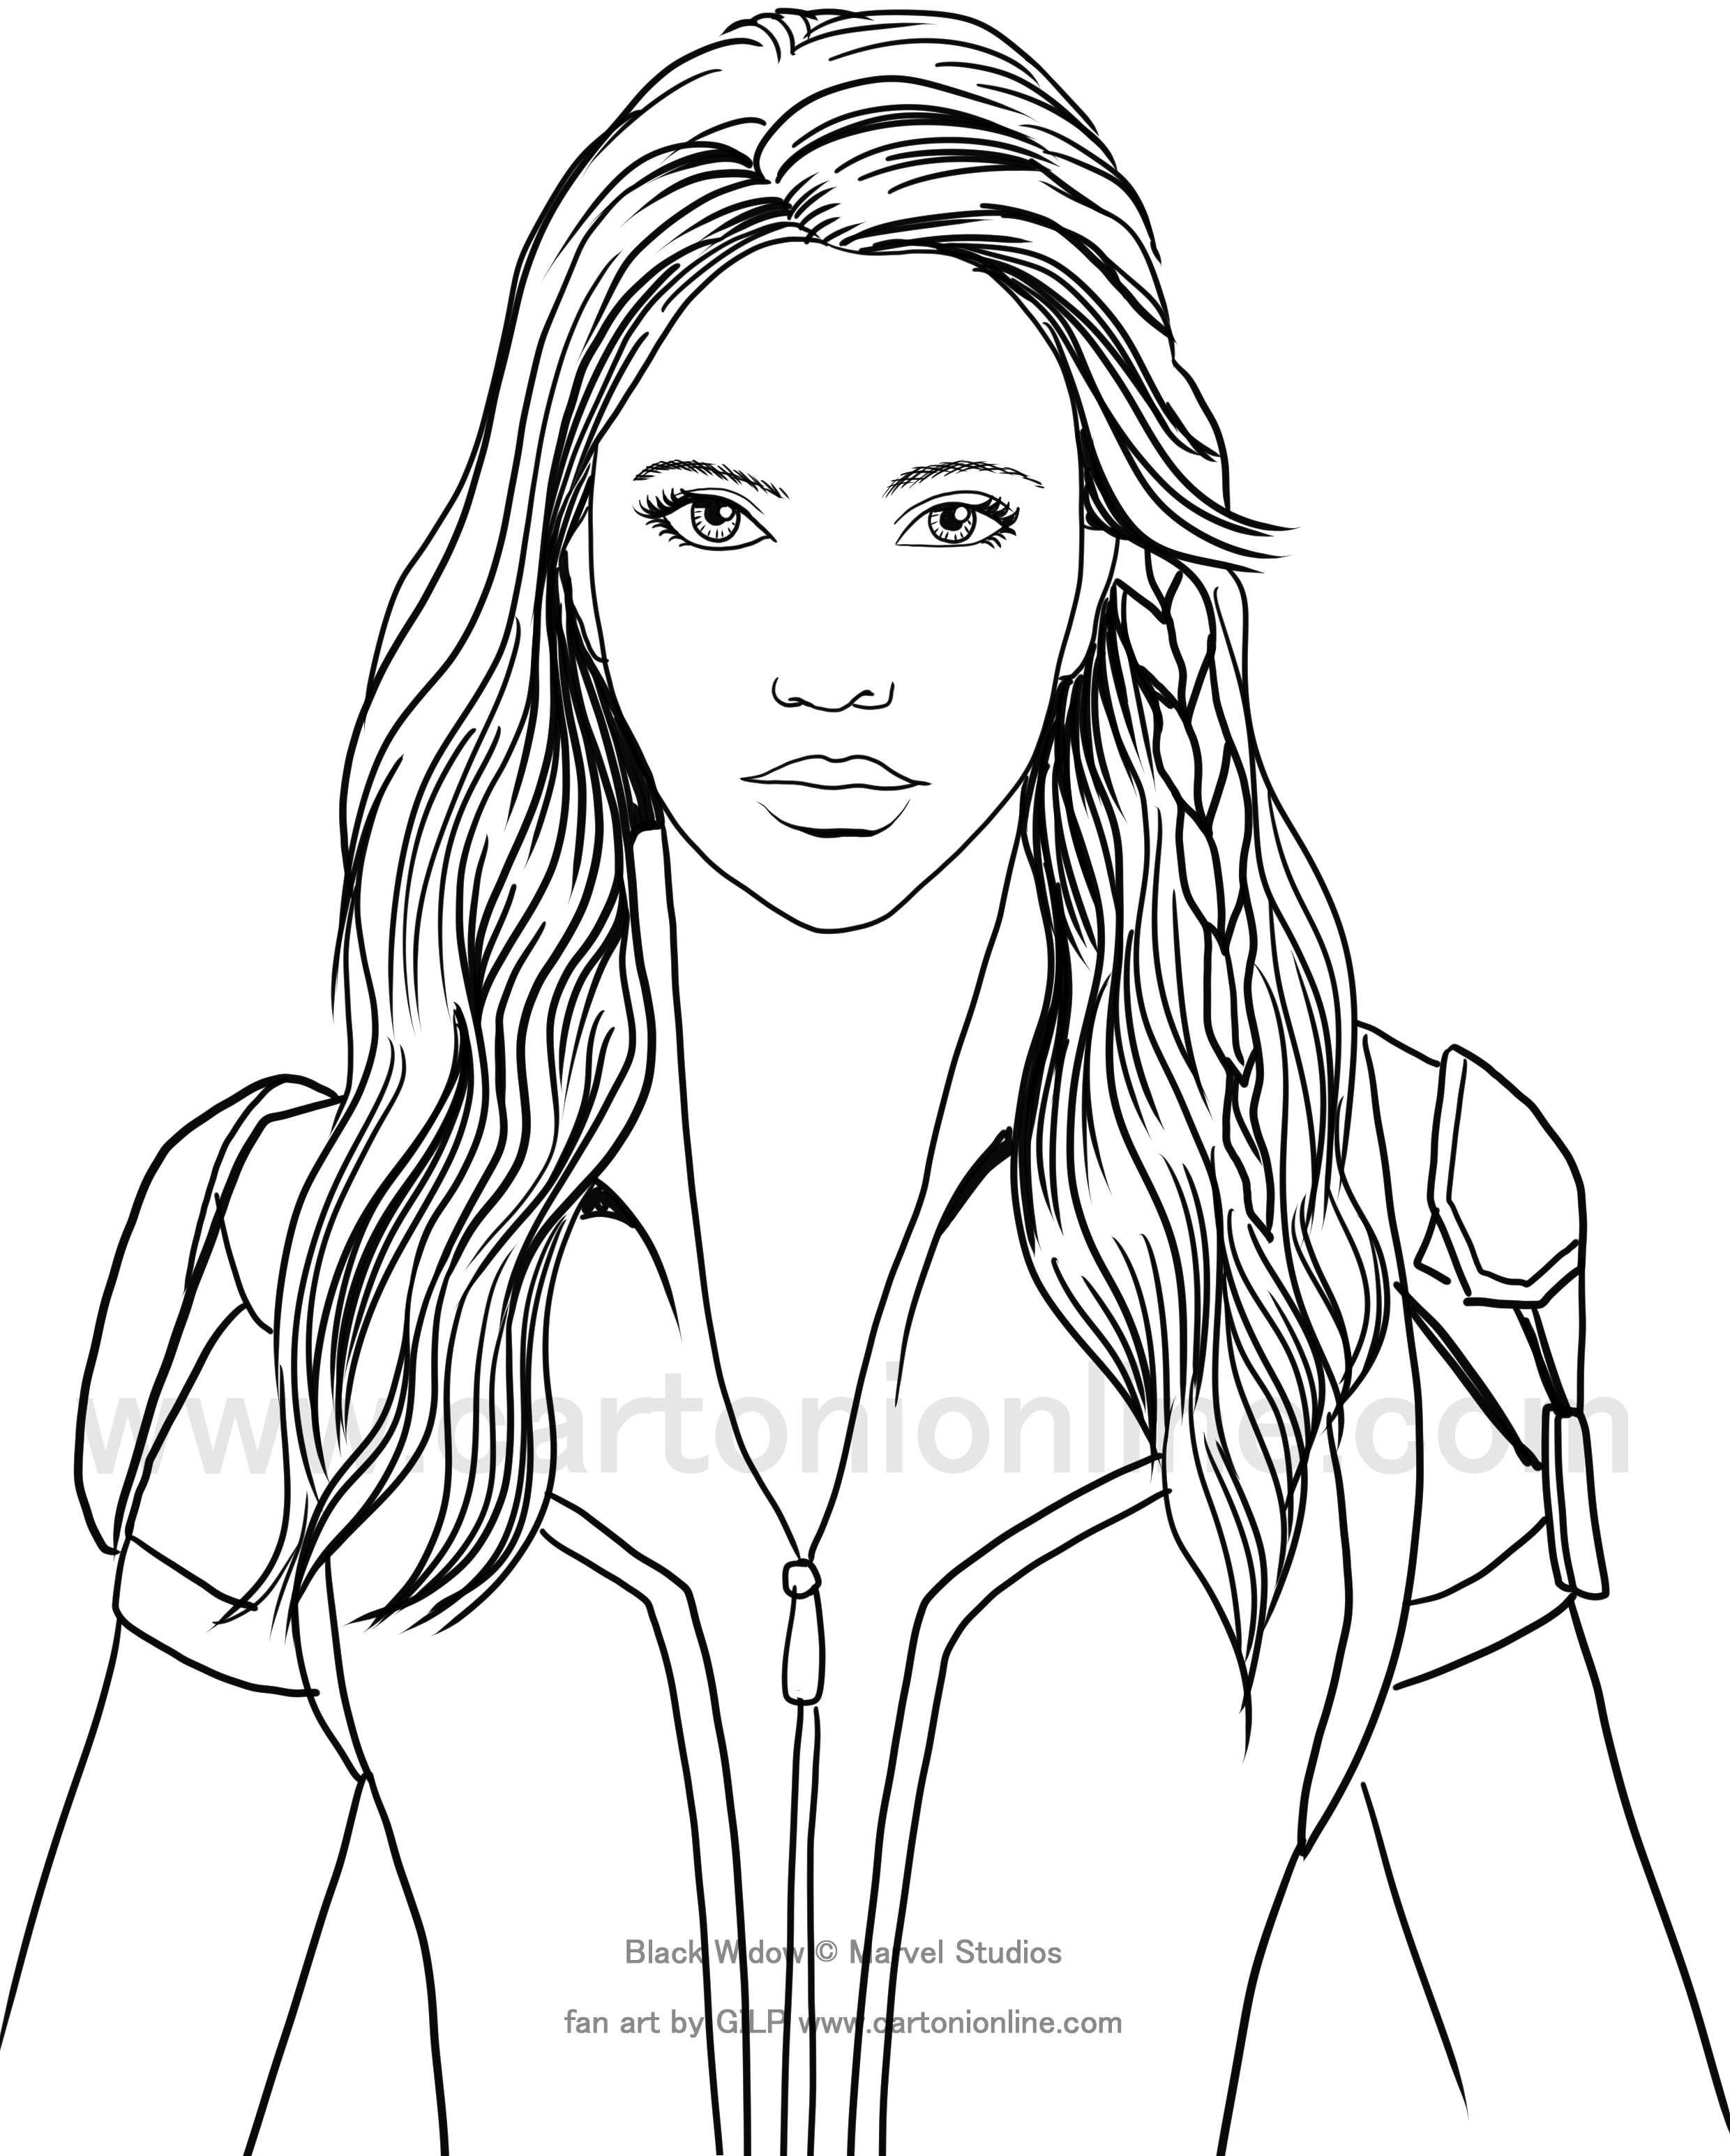 Dibujo de Black Widow (Scarlett Johansson) 01 de Black Widow (película) para imprimir y colorear